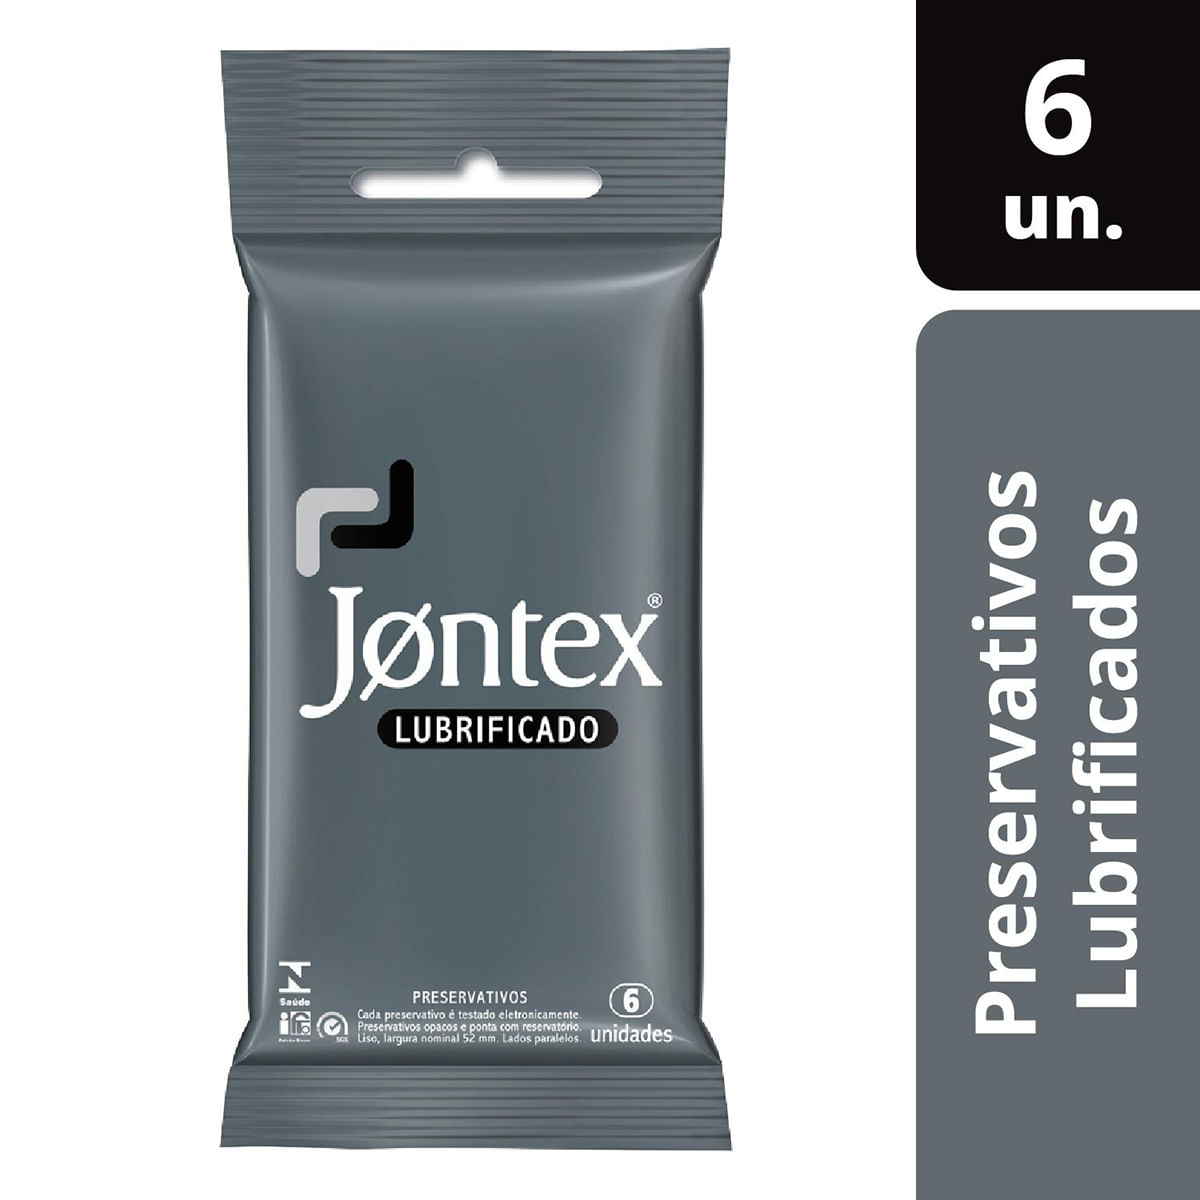 Preservativos Lubrificados com 6 unidades Jontex